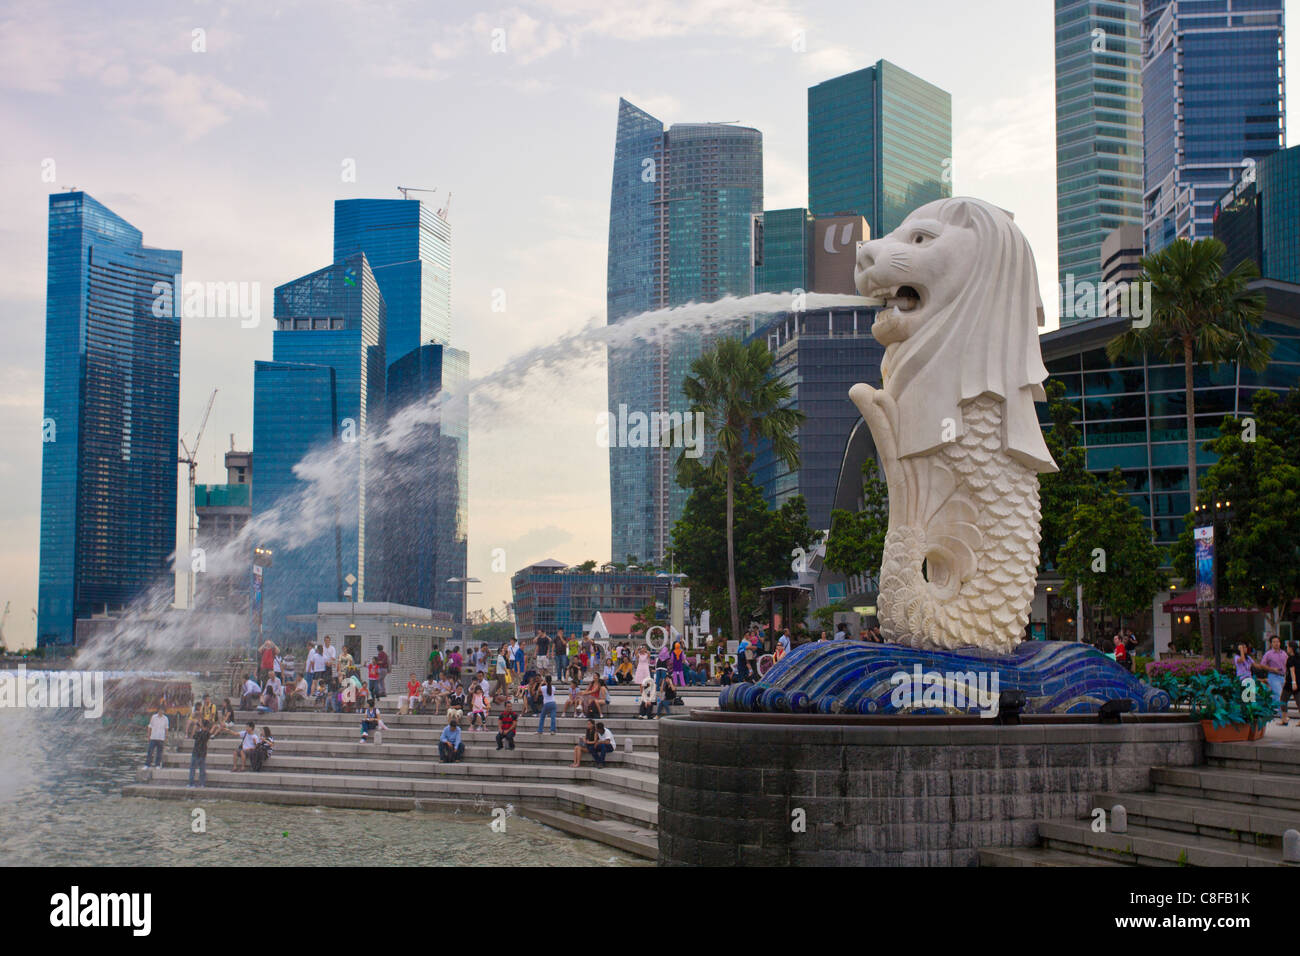 Singapour, Asie, Merlion, l'eau, des vomissements, de cracher, de lion, sirène, pâtés de maisons, immeubles de grande hauteur, Skyline, centre-ville, passer Banque D'Images